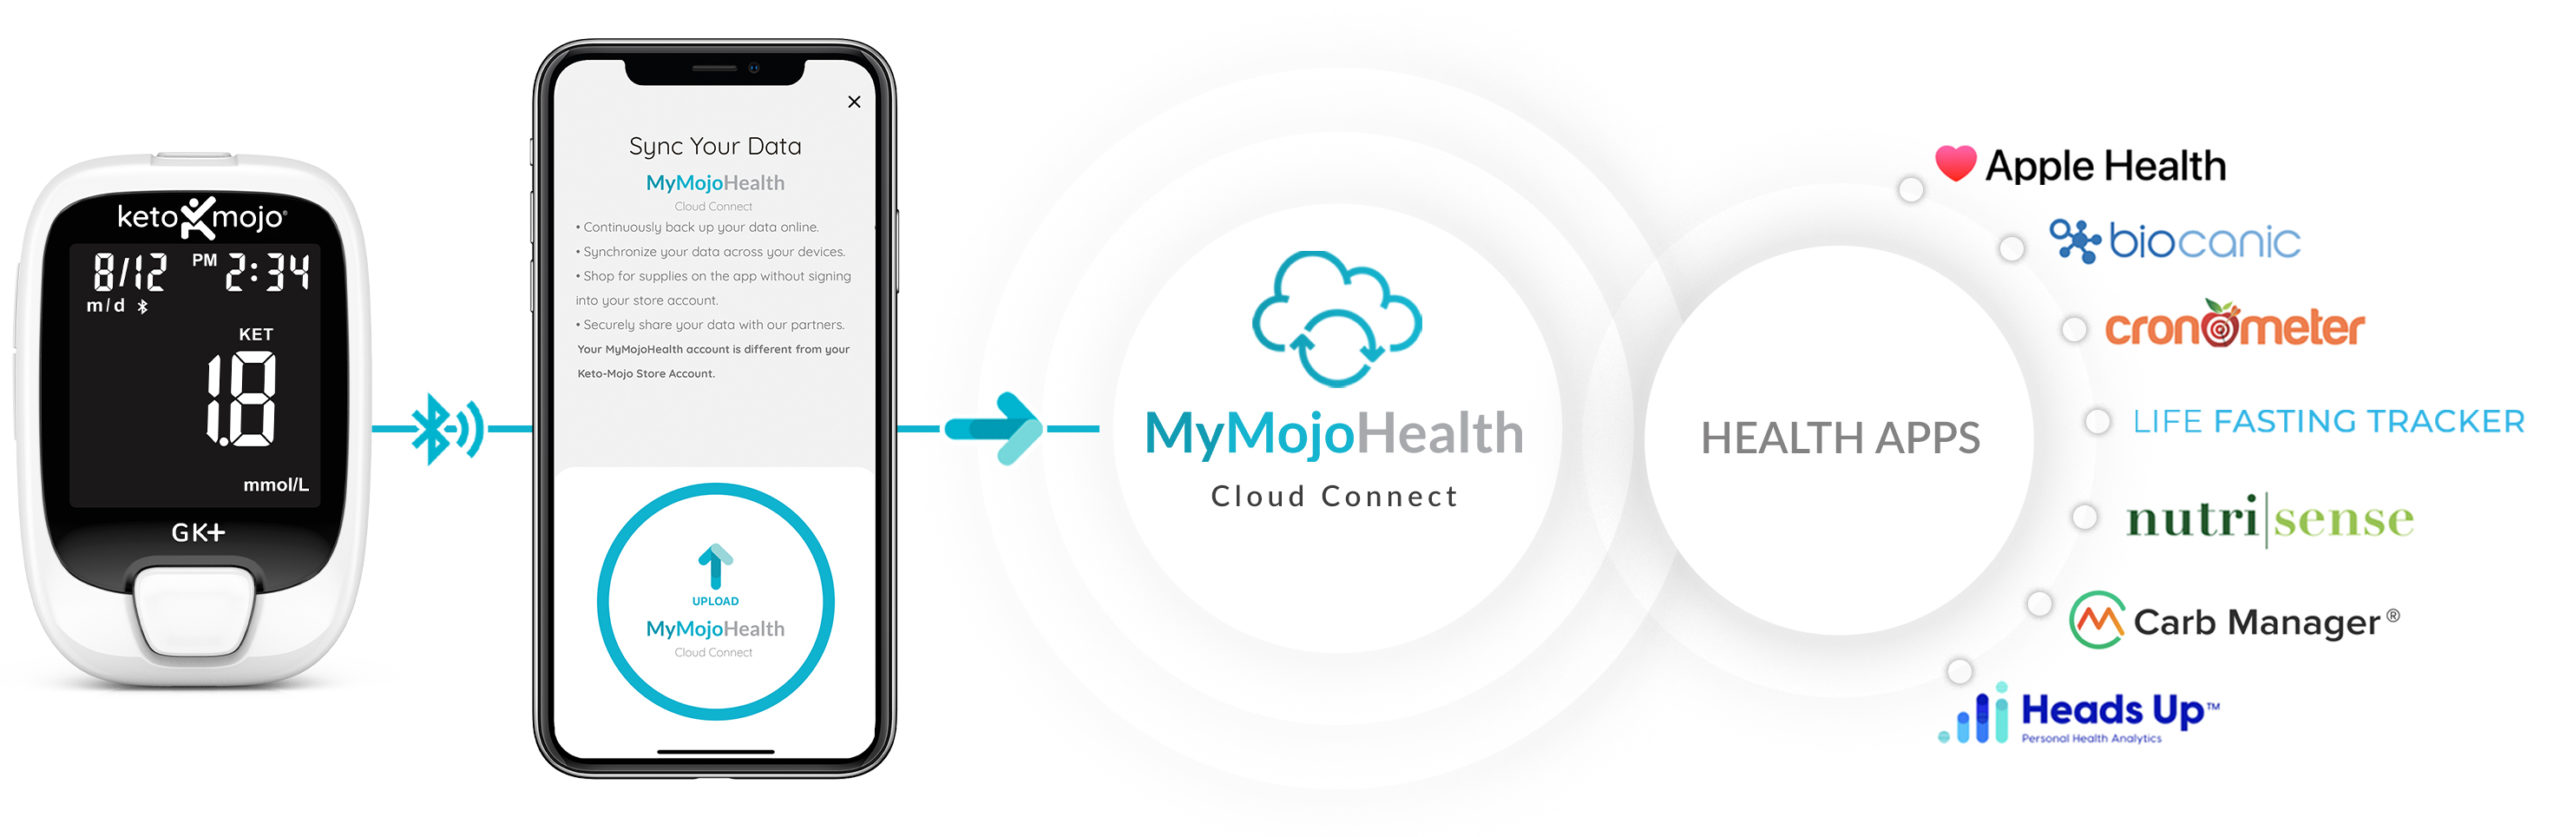 Keto-mojo MyMojoHealth Connect to Health Apps